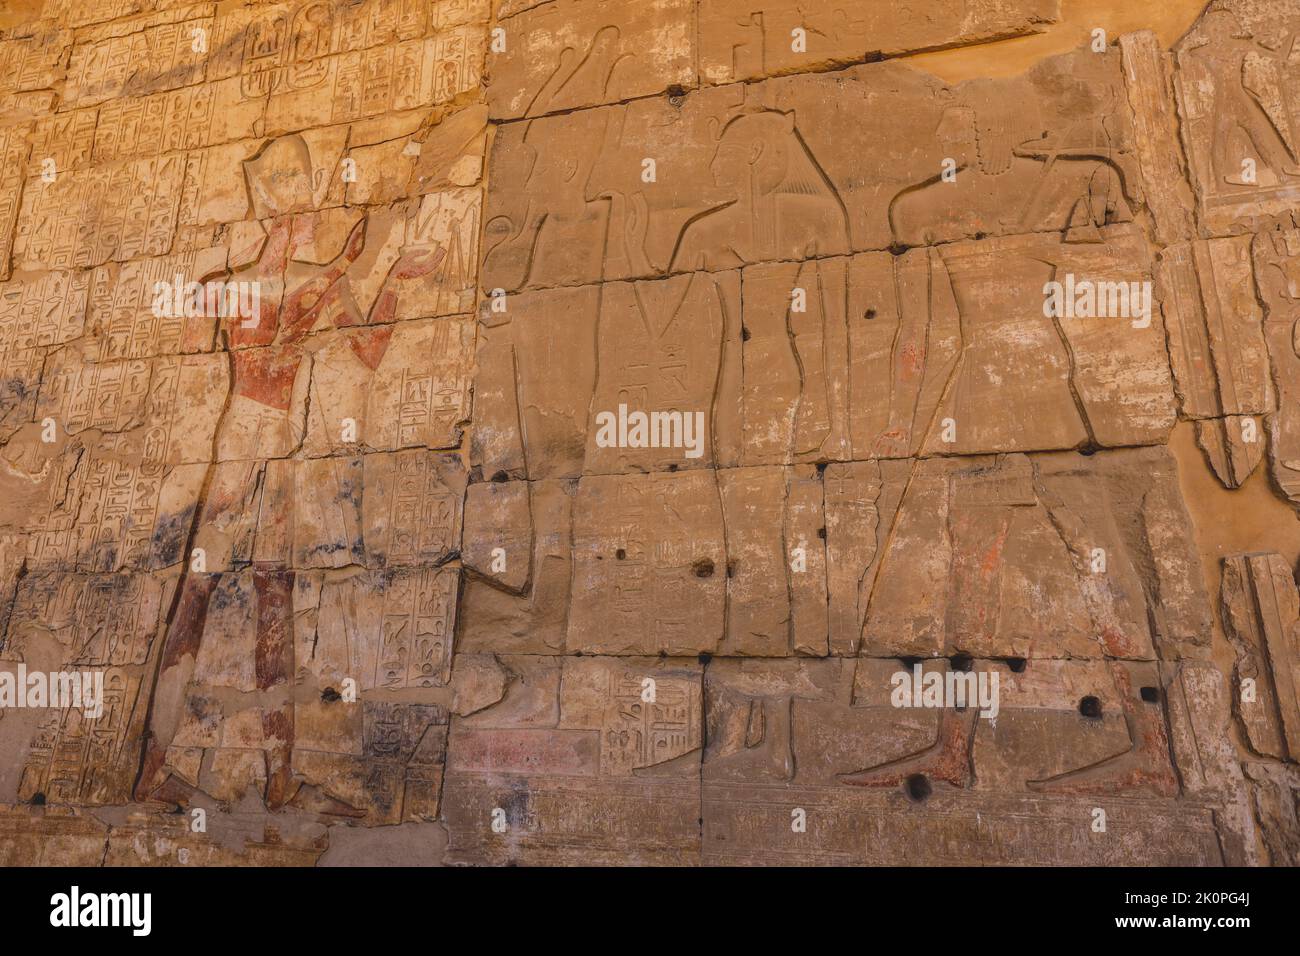 Ancien dessin égyptien sur les murs du temple de Seti I également connu comme le Grand Temple d'Abydos à Kharga, Egypte Banque D'Images